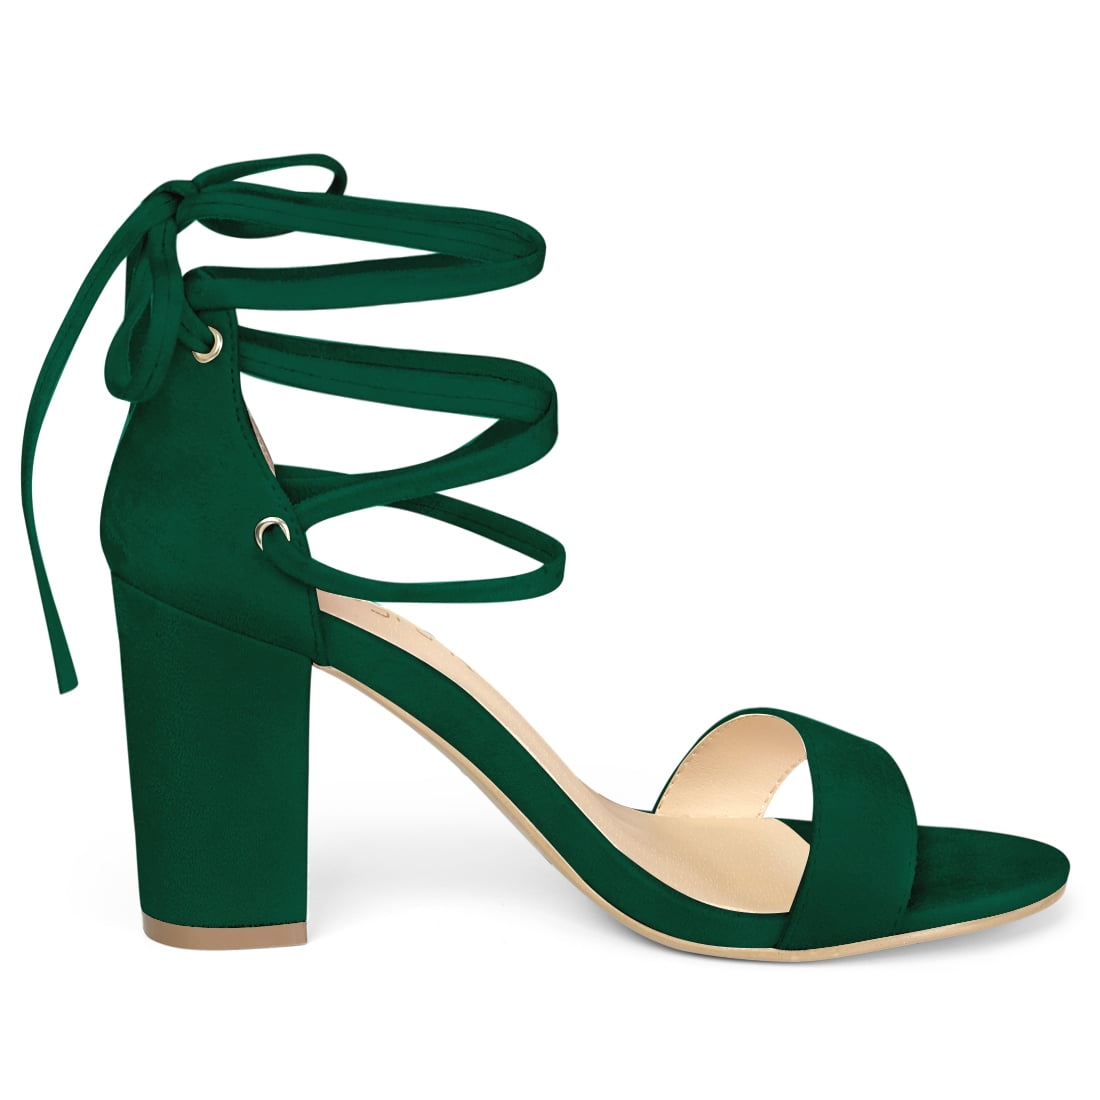 Wire Stretch Sandals Green Blue Designer Spiral Strap High Heels